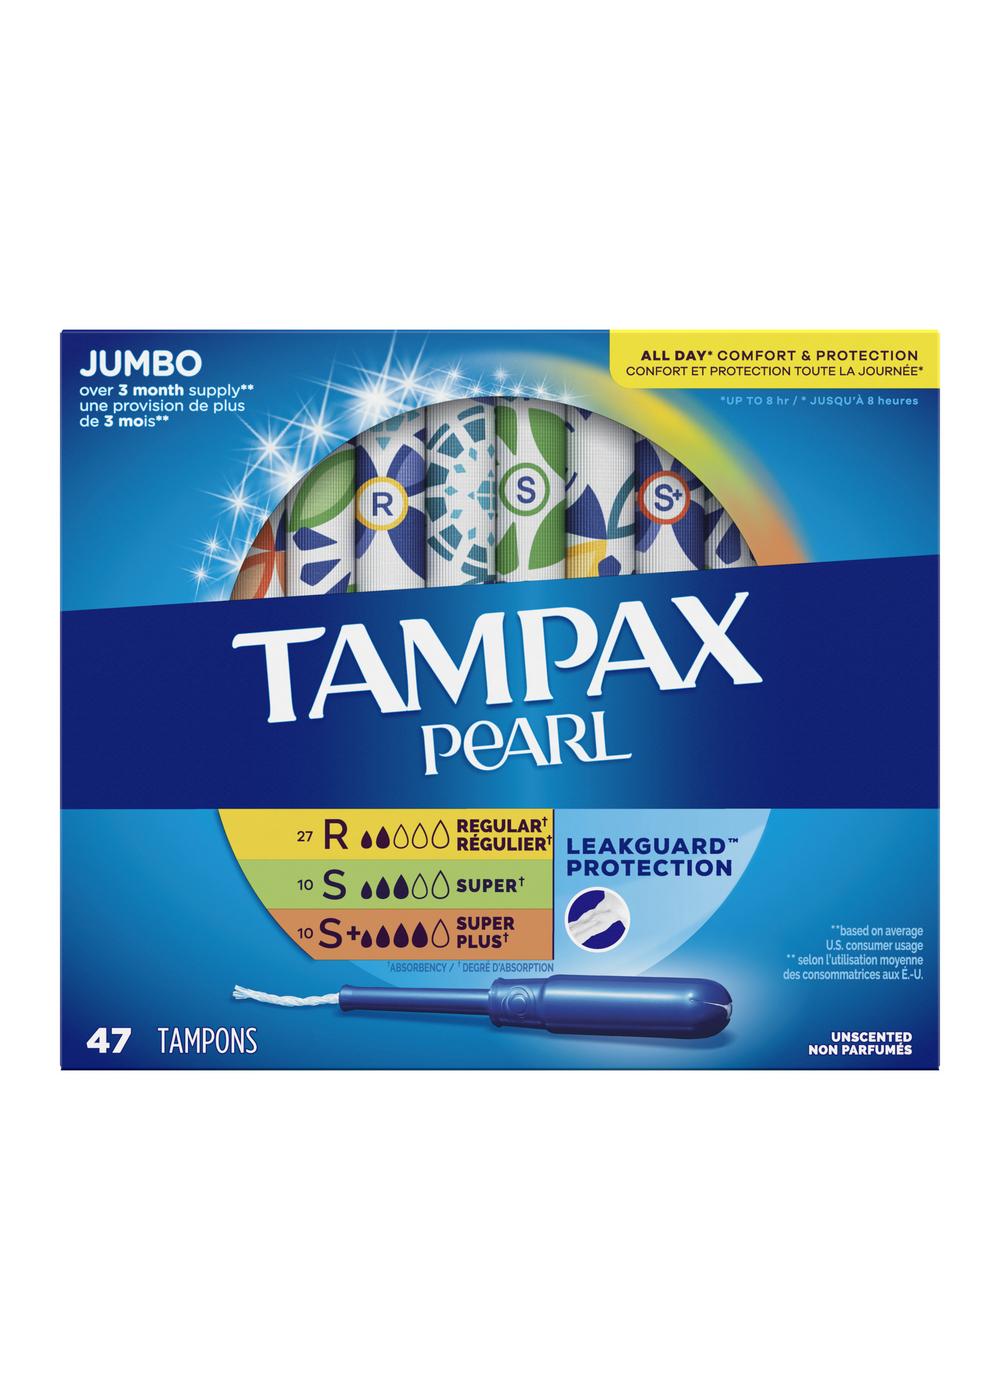 Tampax Pearl Tampons - Regular Super & Super Plus - Shop Tampons at H-E-B